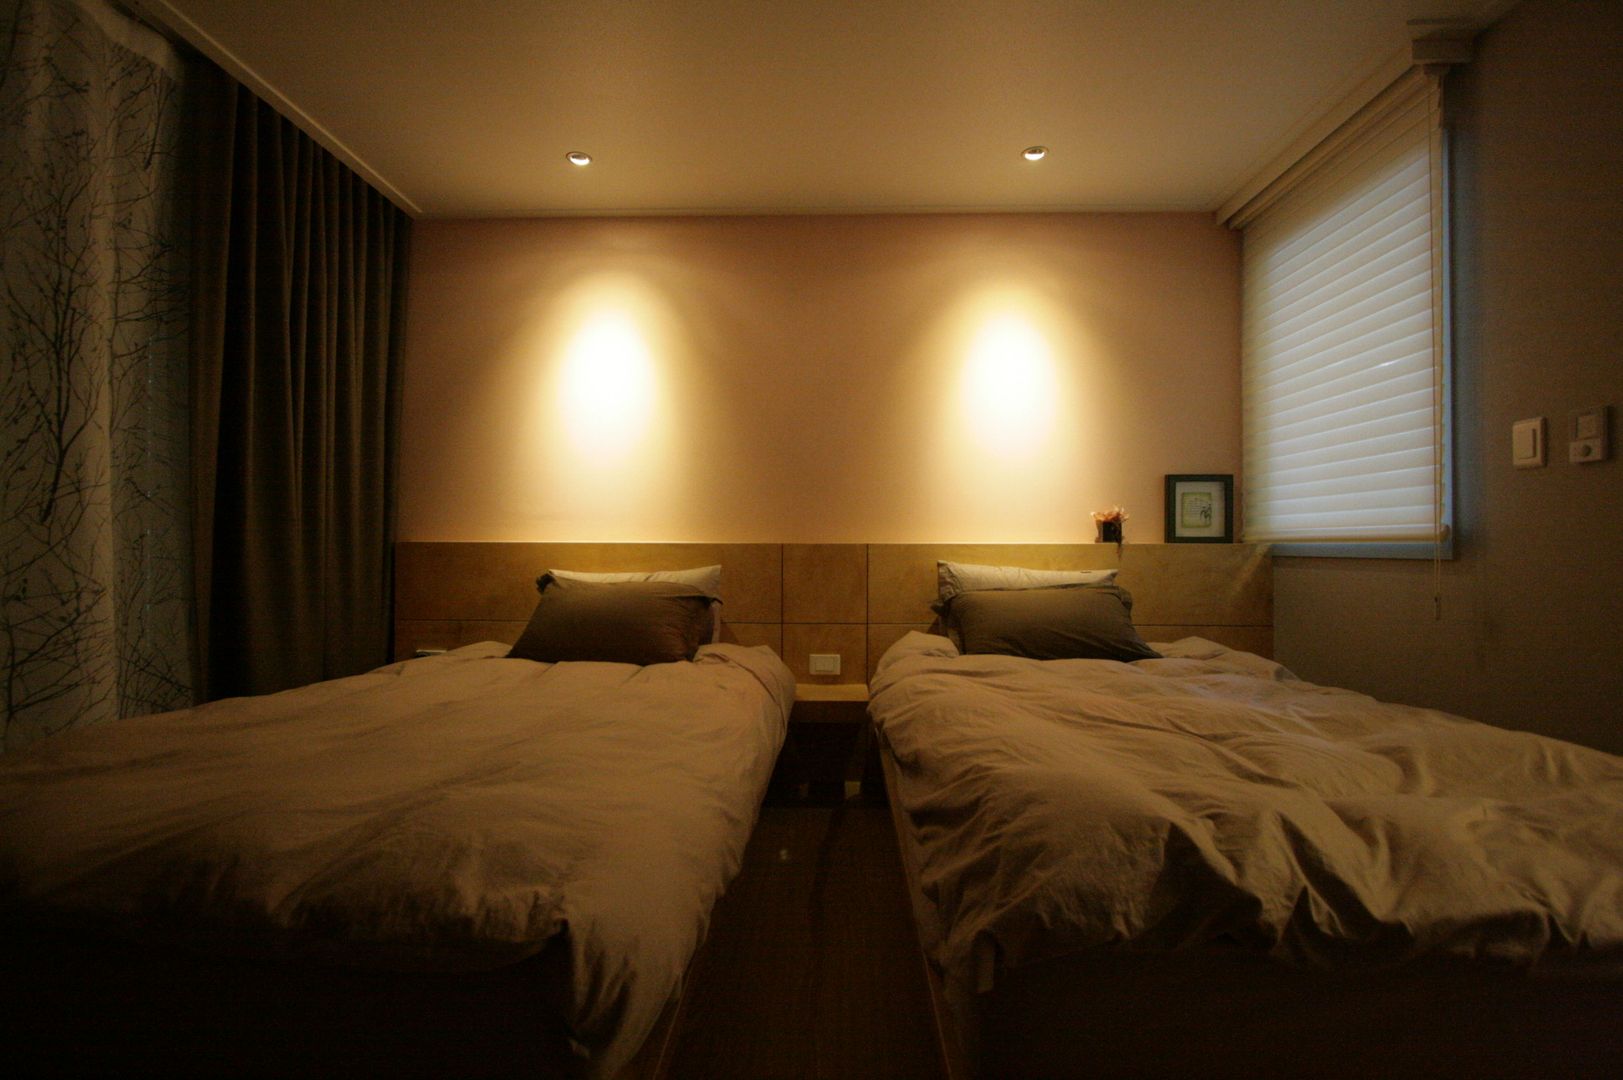 호텔식 트윈룸_34py, 홍예디자인 홍예디자인 غرفة نوم